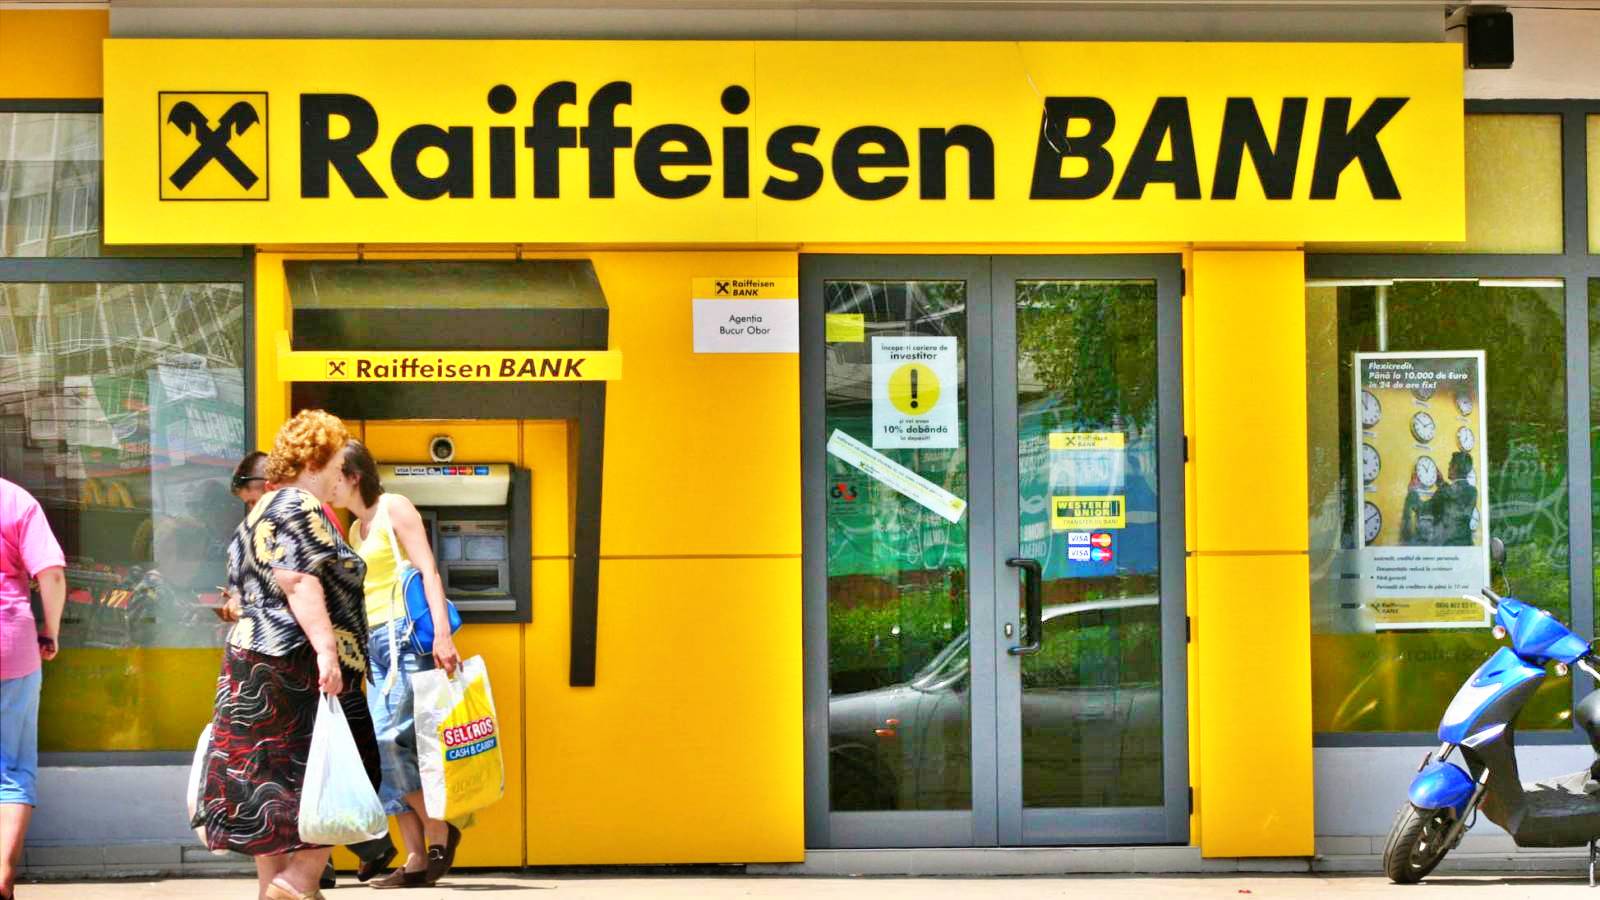 Raiffeisen Bank VIGTIG meddelelse til ALLE rumænere i hele landet